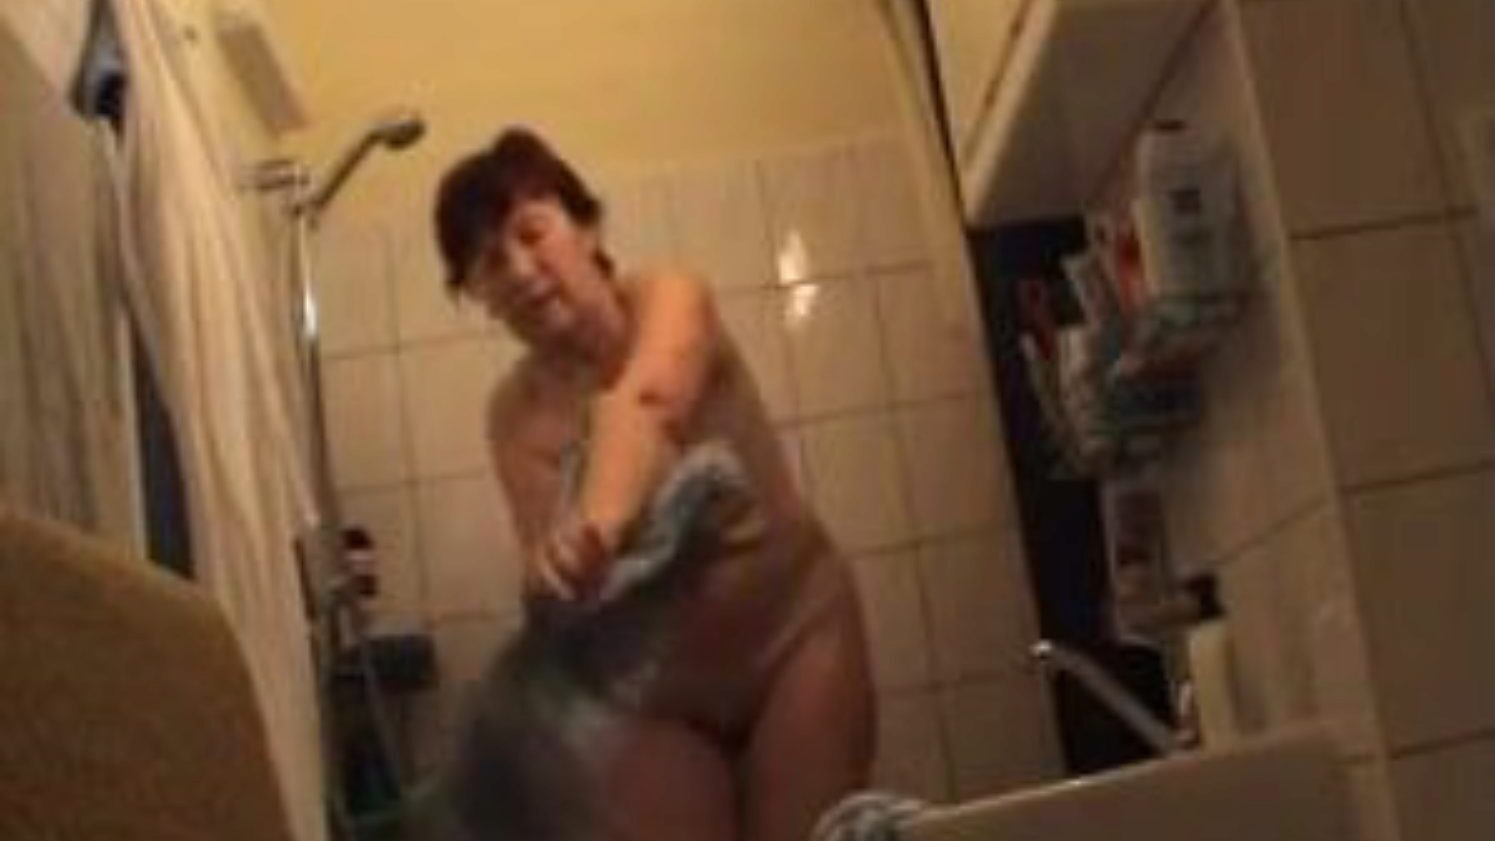 vovó alemã nua no banheiro, anúncio de vídeo pornô de alemães grátis assistir vovó alemã nua na cena de filme do banheiro no xhamster, o maior site de tubo de sexo com toneladas de vovós nuas alemãs e vídeos porno maduros